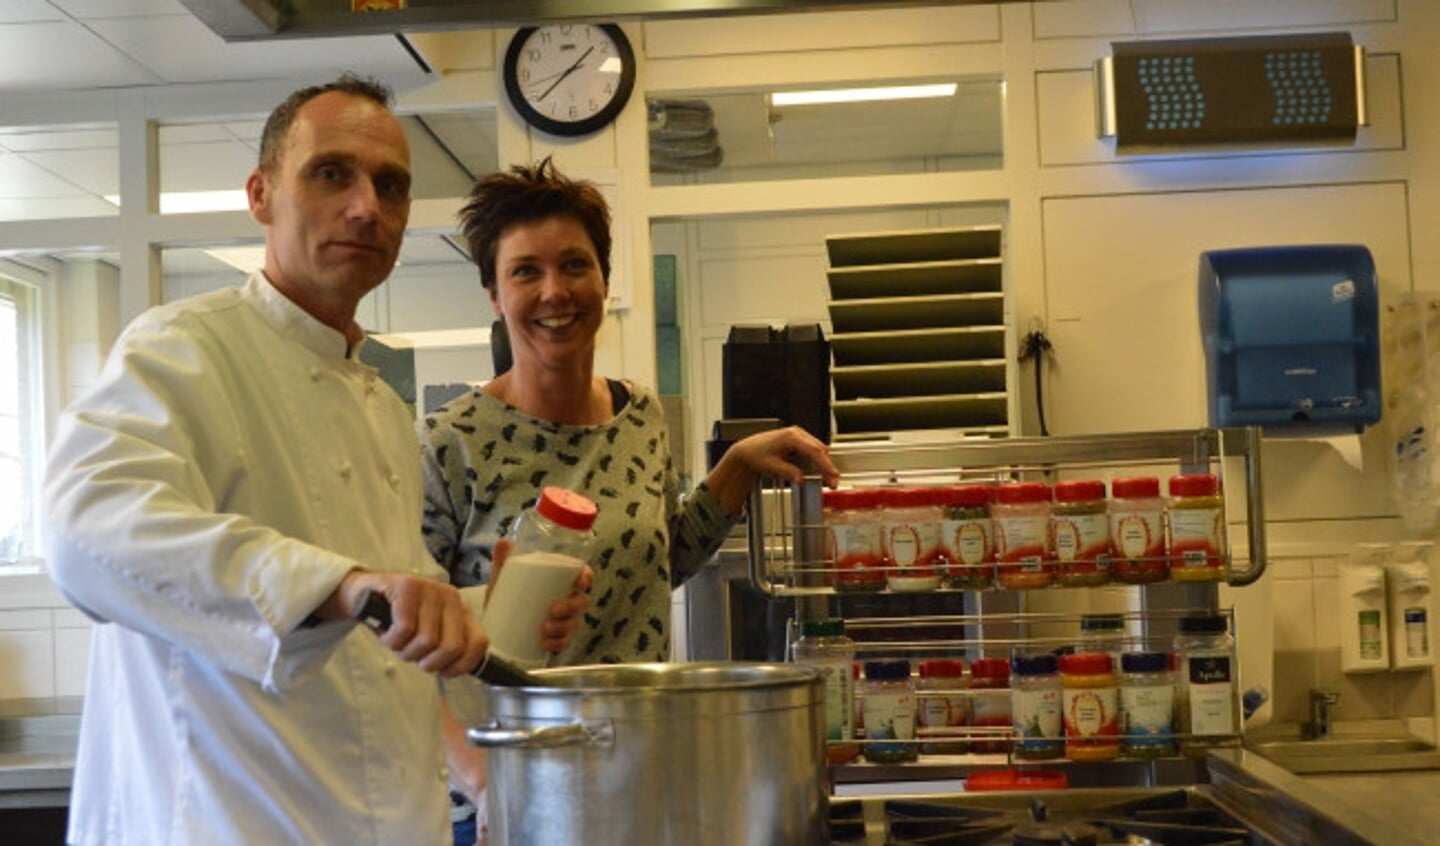  Dieter Fack en Sylvia van Mourik in de keuken van De Regenboog.